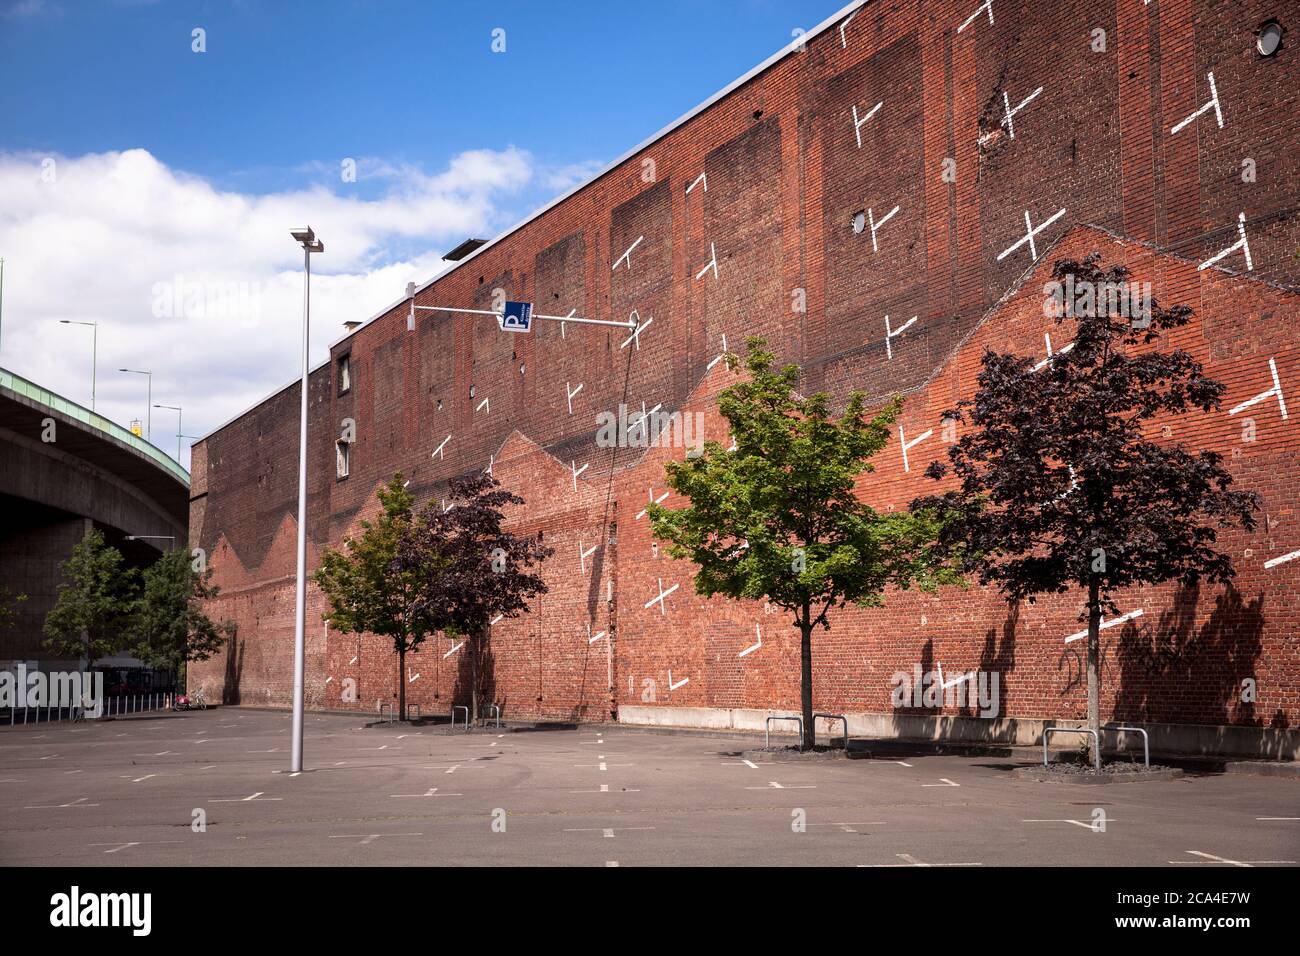 Parc de stationnement vertical peint du plan de projet architectural de Cologne sur un mur de briques près de la foire à Deutz, Cologne, Allemagne. Aufgemalter vertikal Banque D'Images